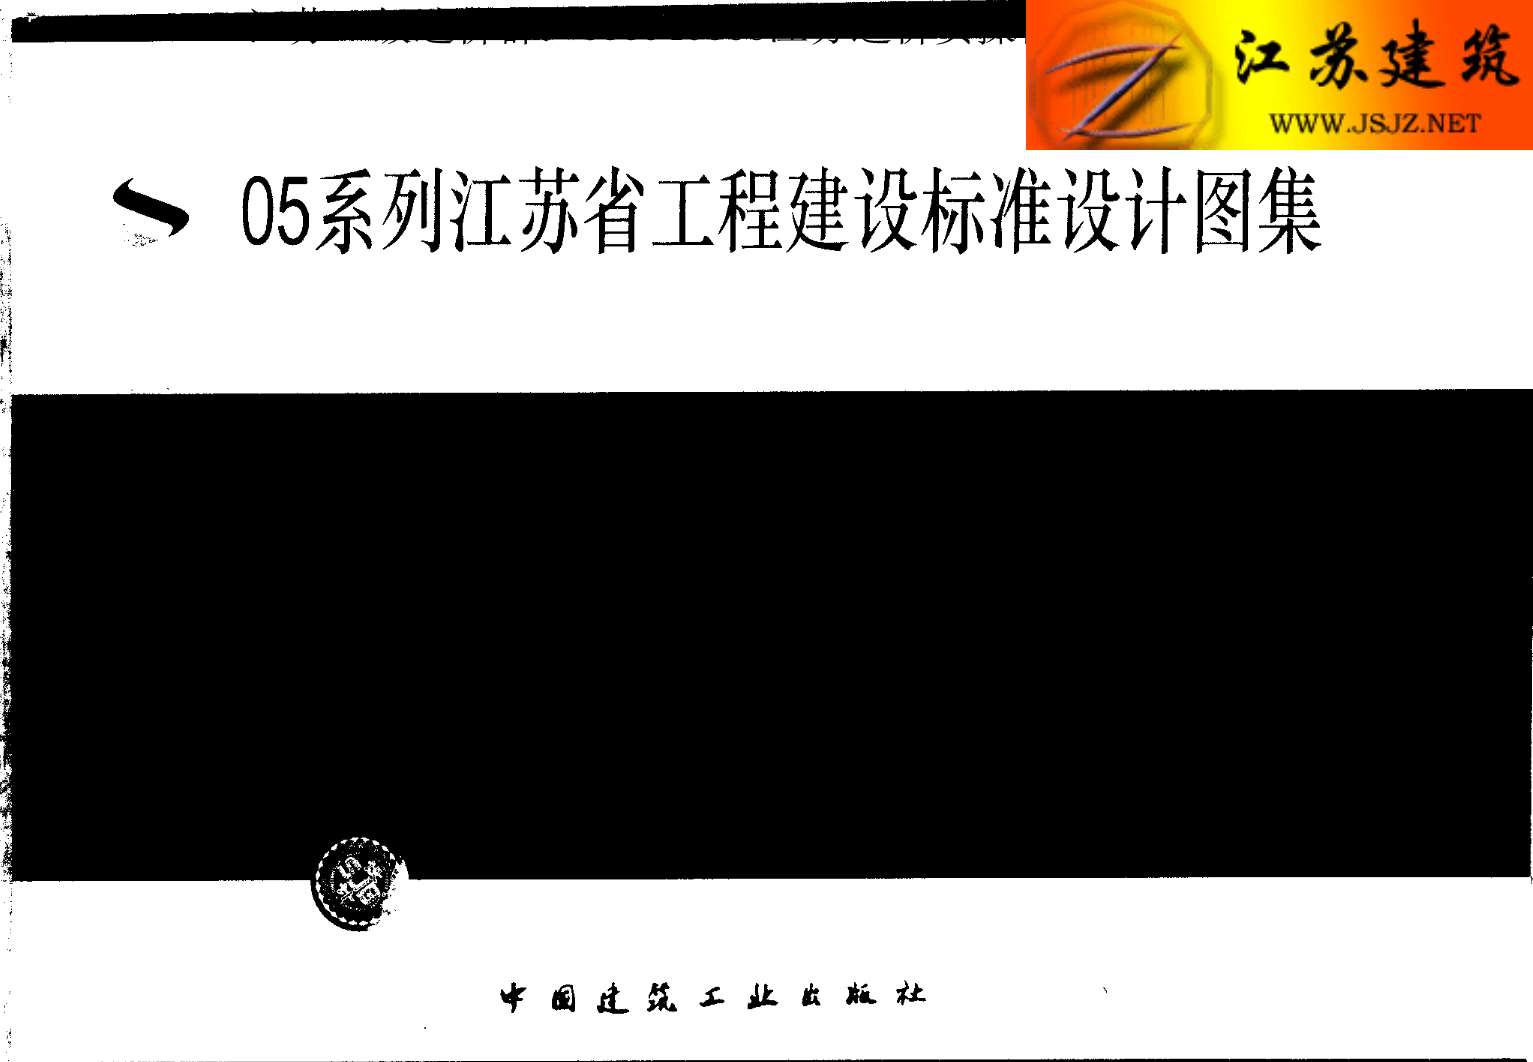 苏G01-2003(05系列江苏省工程建设标准设计图集)